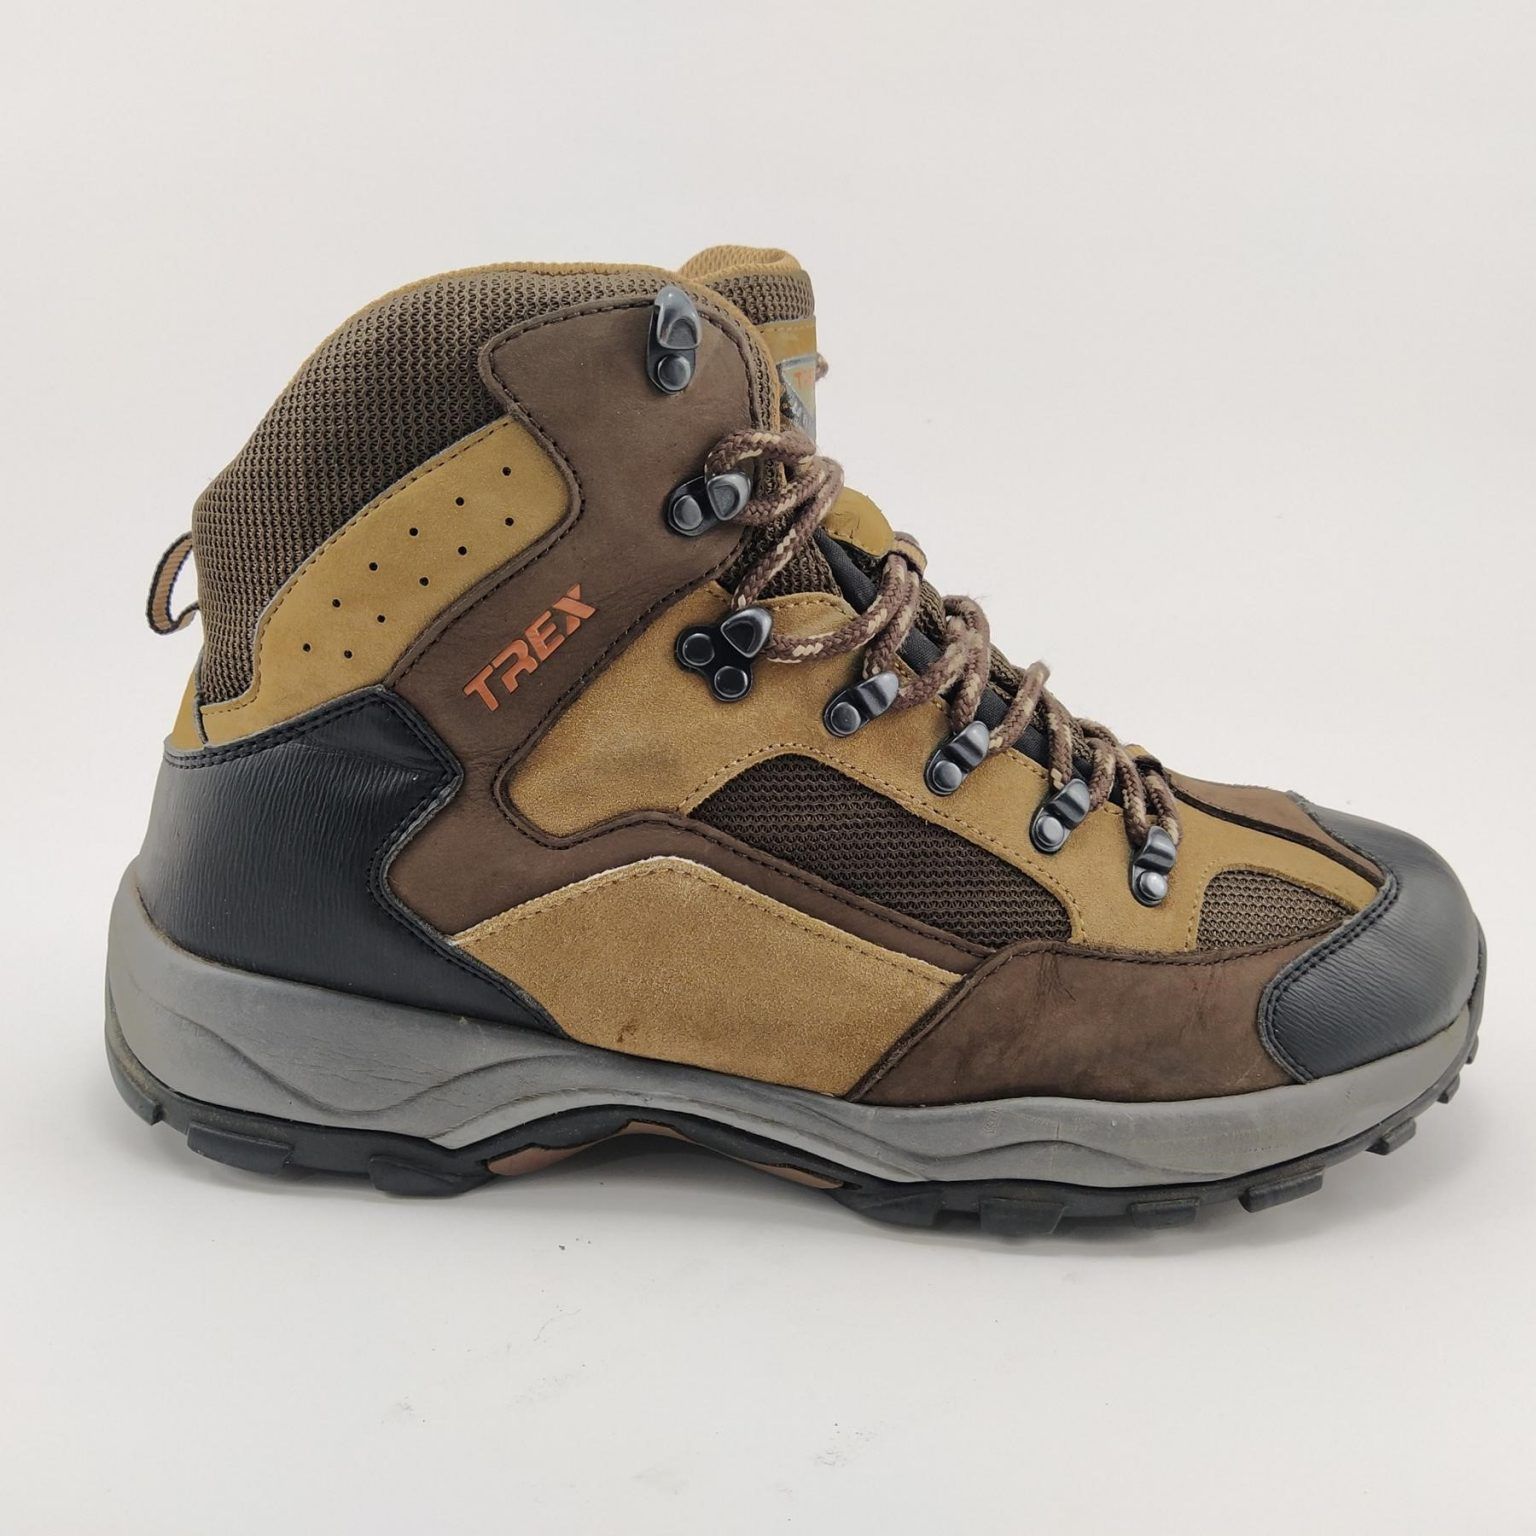 کفش مناسب کوهنوردی | تجهیزات مهم و ضروری کوهنوردی چیست | فروشگاه کیف و کوله پشتی تنسر